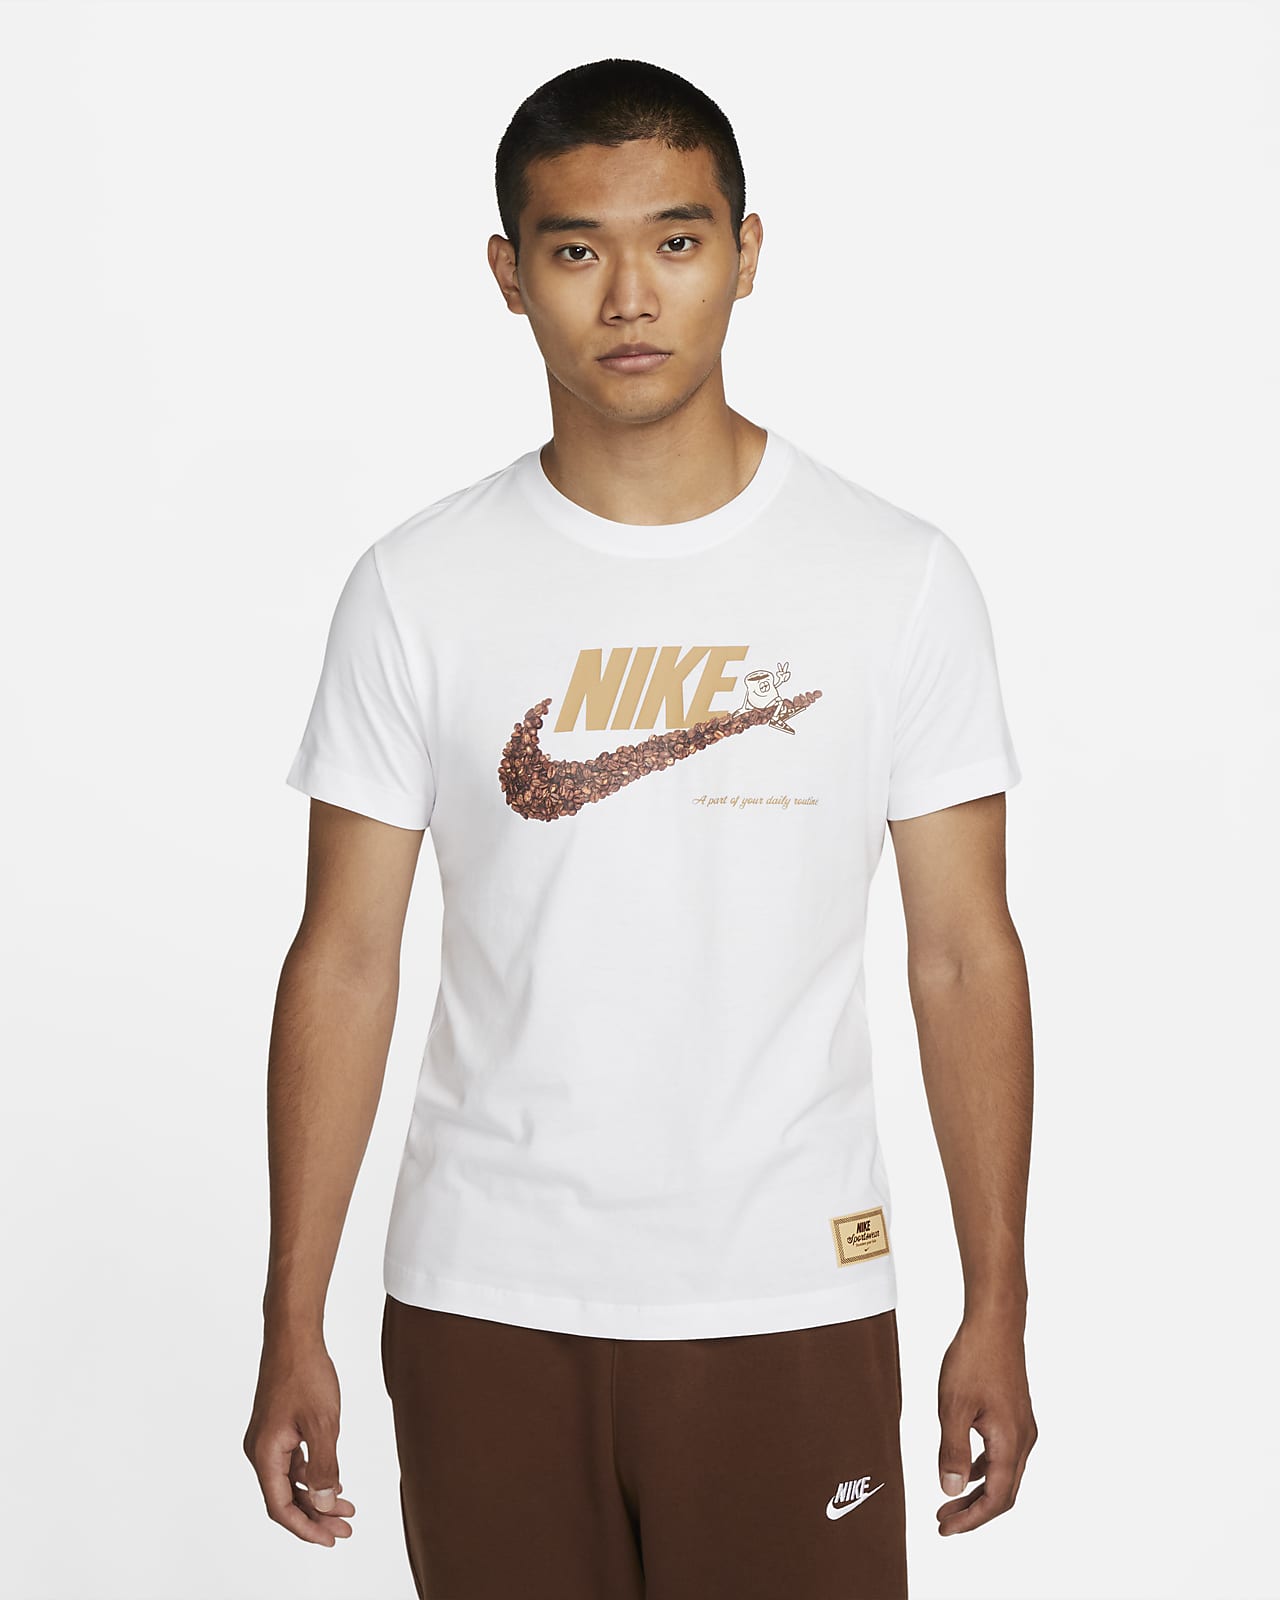 NIKE公式】ナイキ スポーツウェア メンズ Tシャツ.オンラインストア